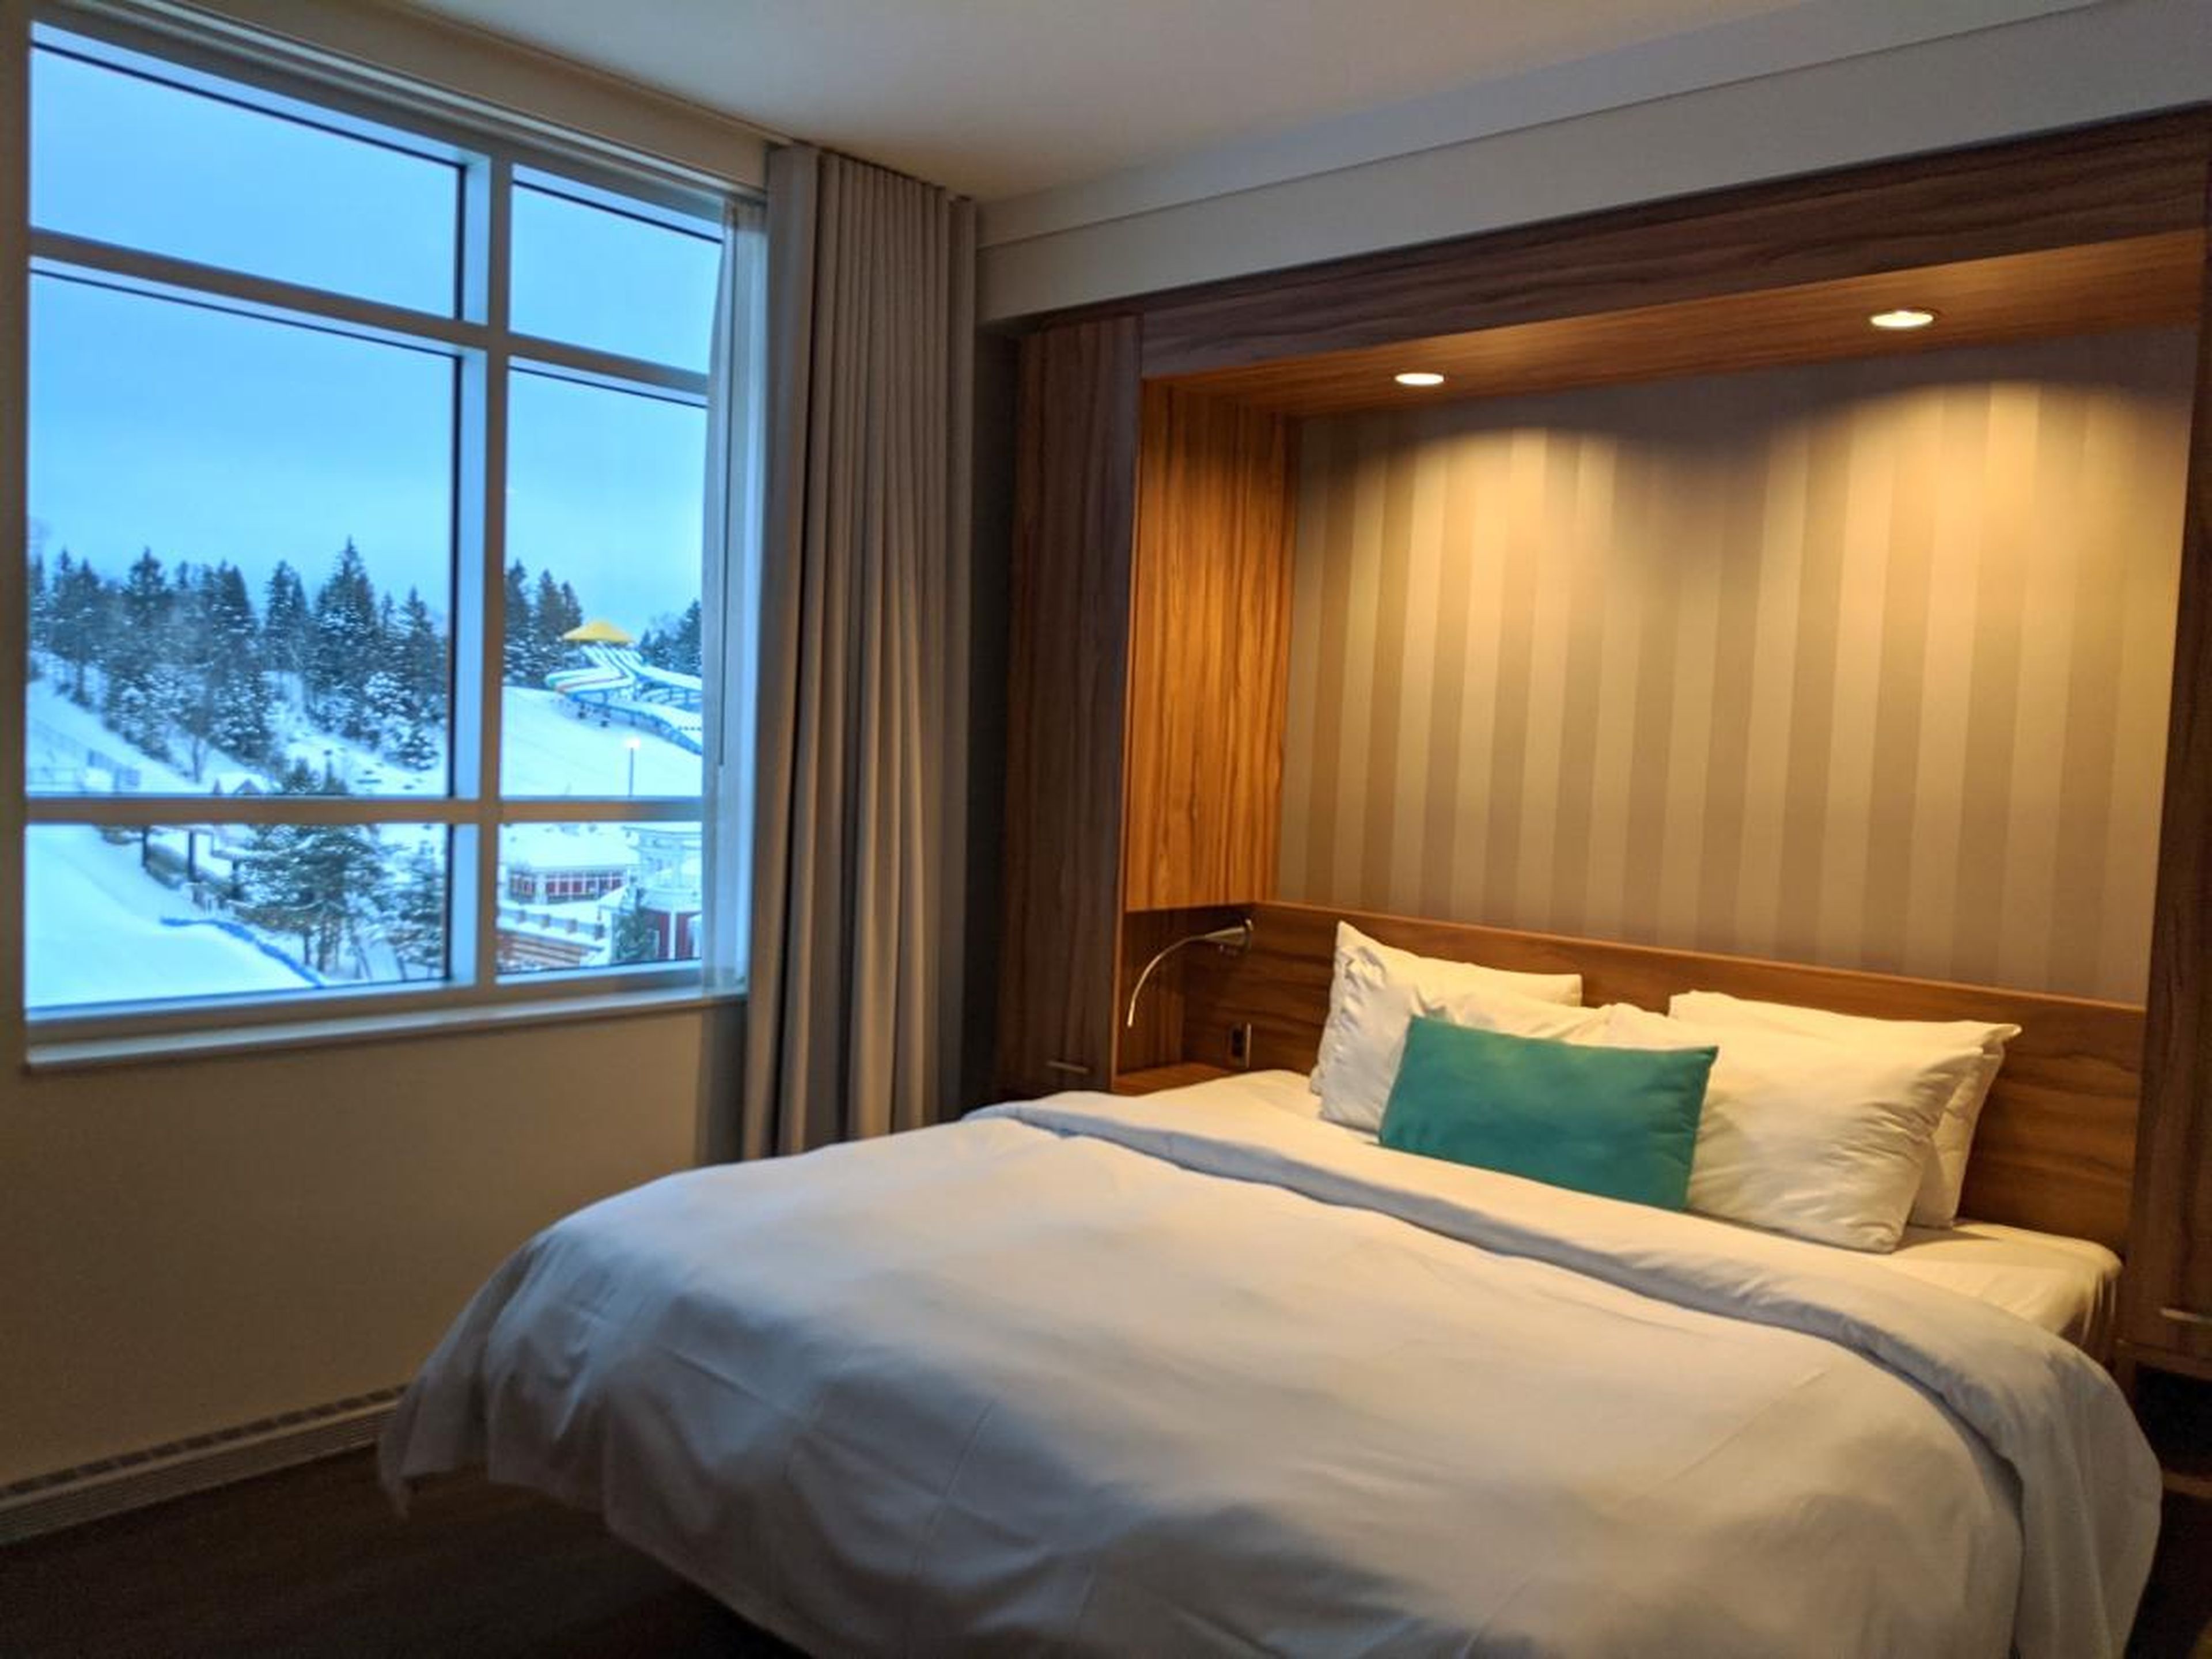 También obtienes una habitación en el hotel de cuatro estrellas Valcartier.